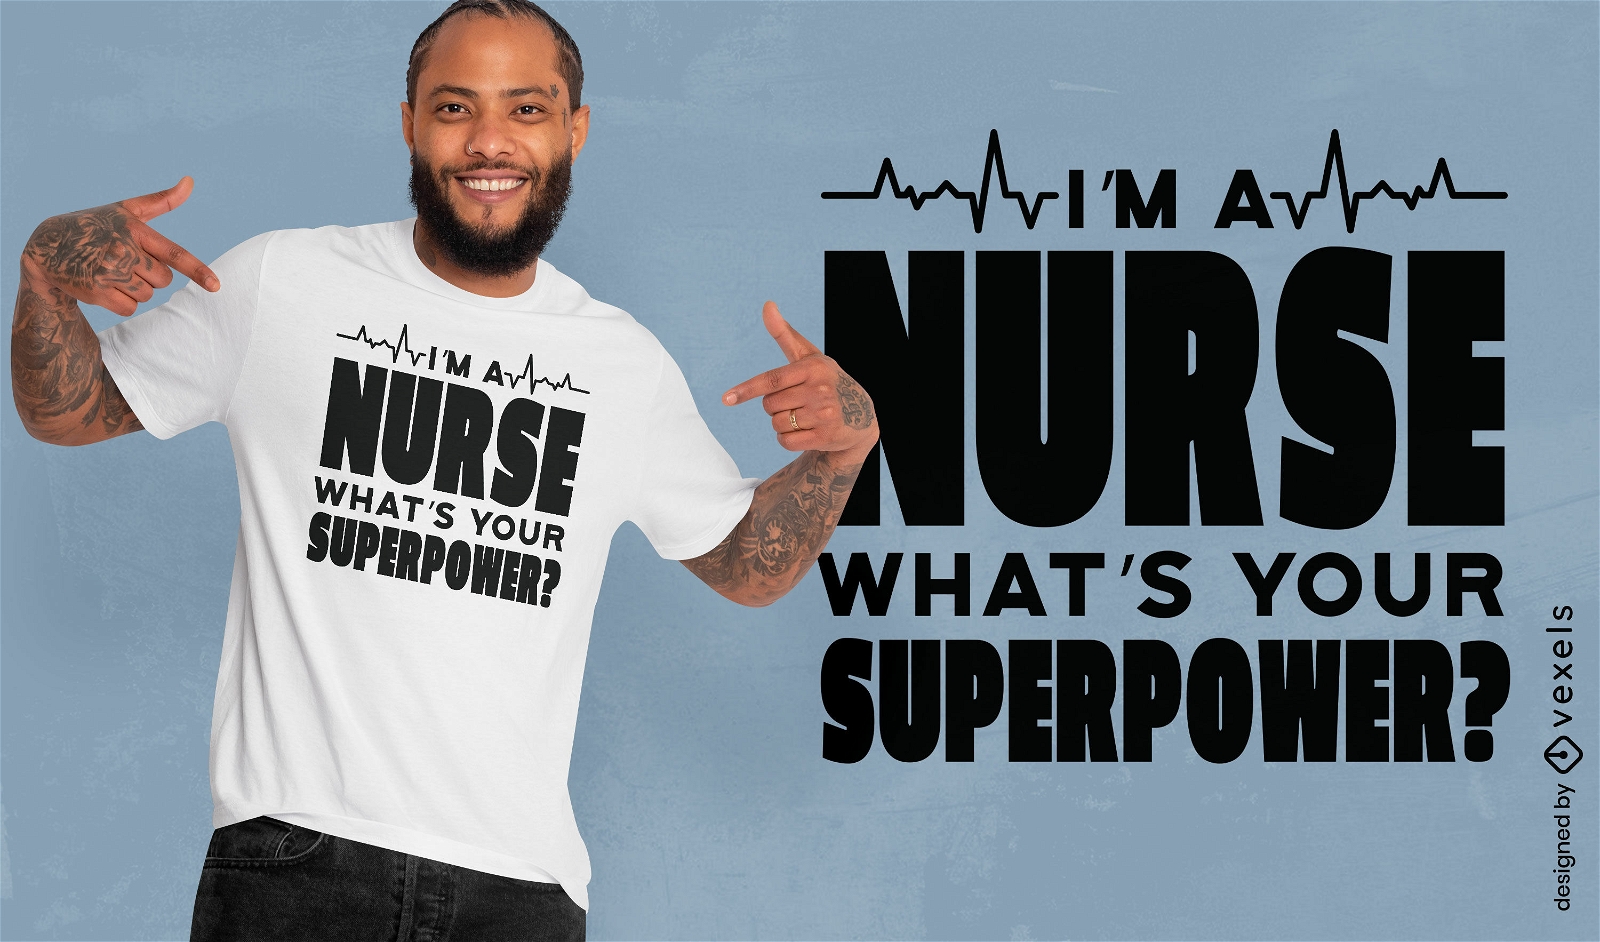 Nurse superpower quote t-shirt design